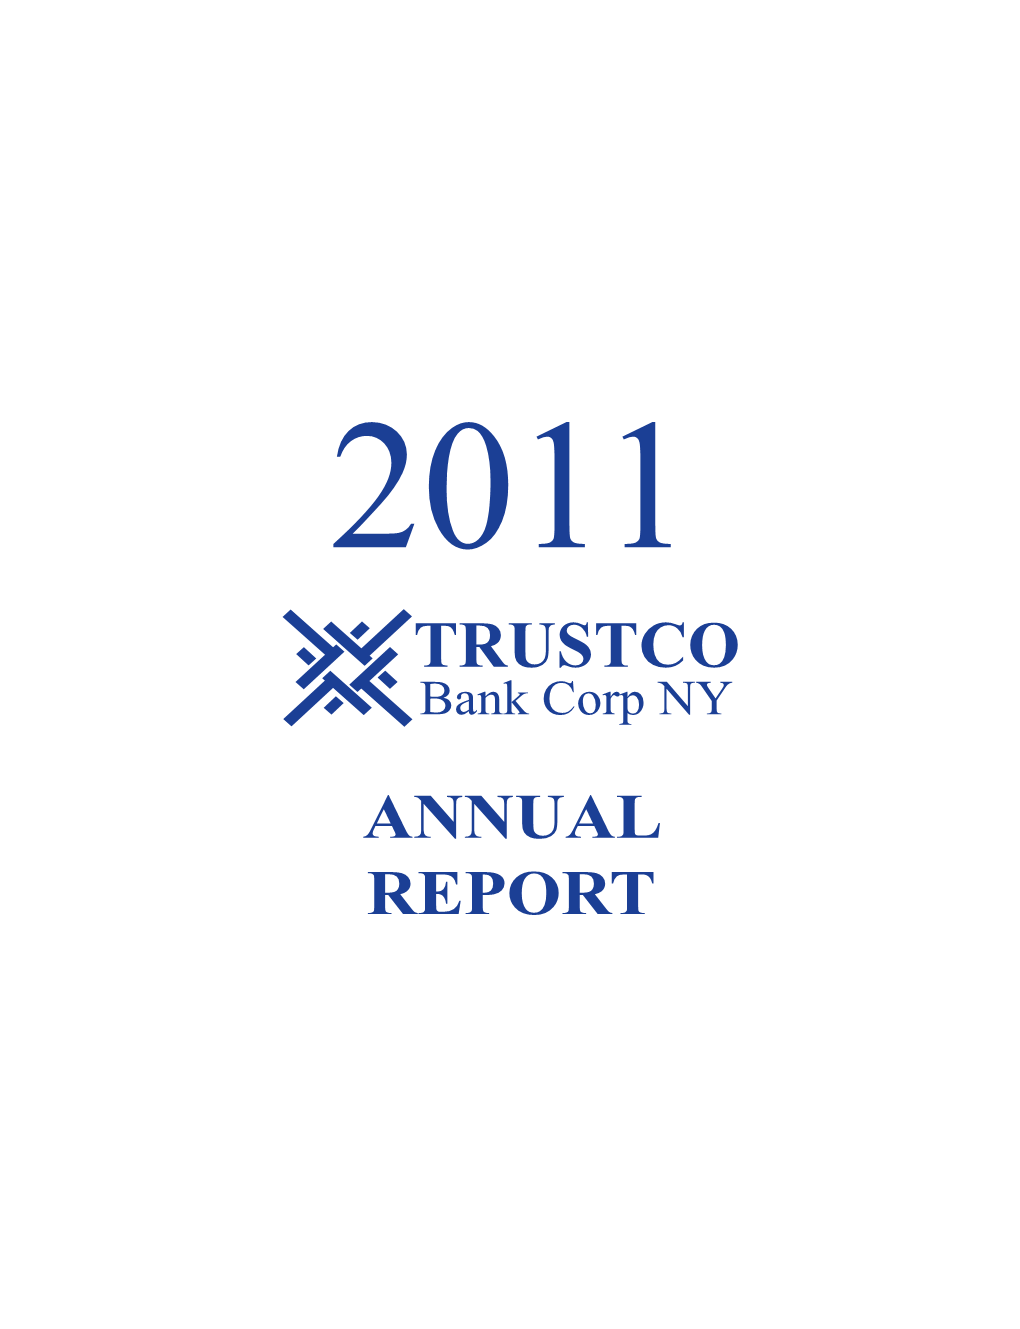 TRUSTCO Bank Corp NY